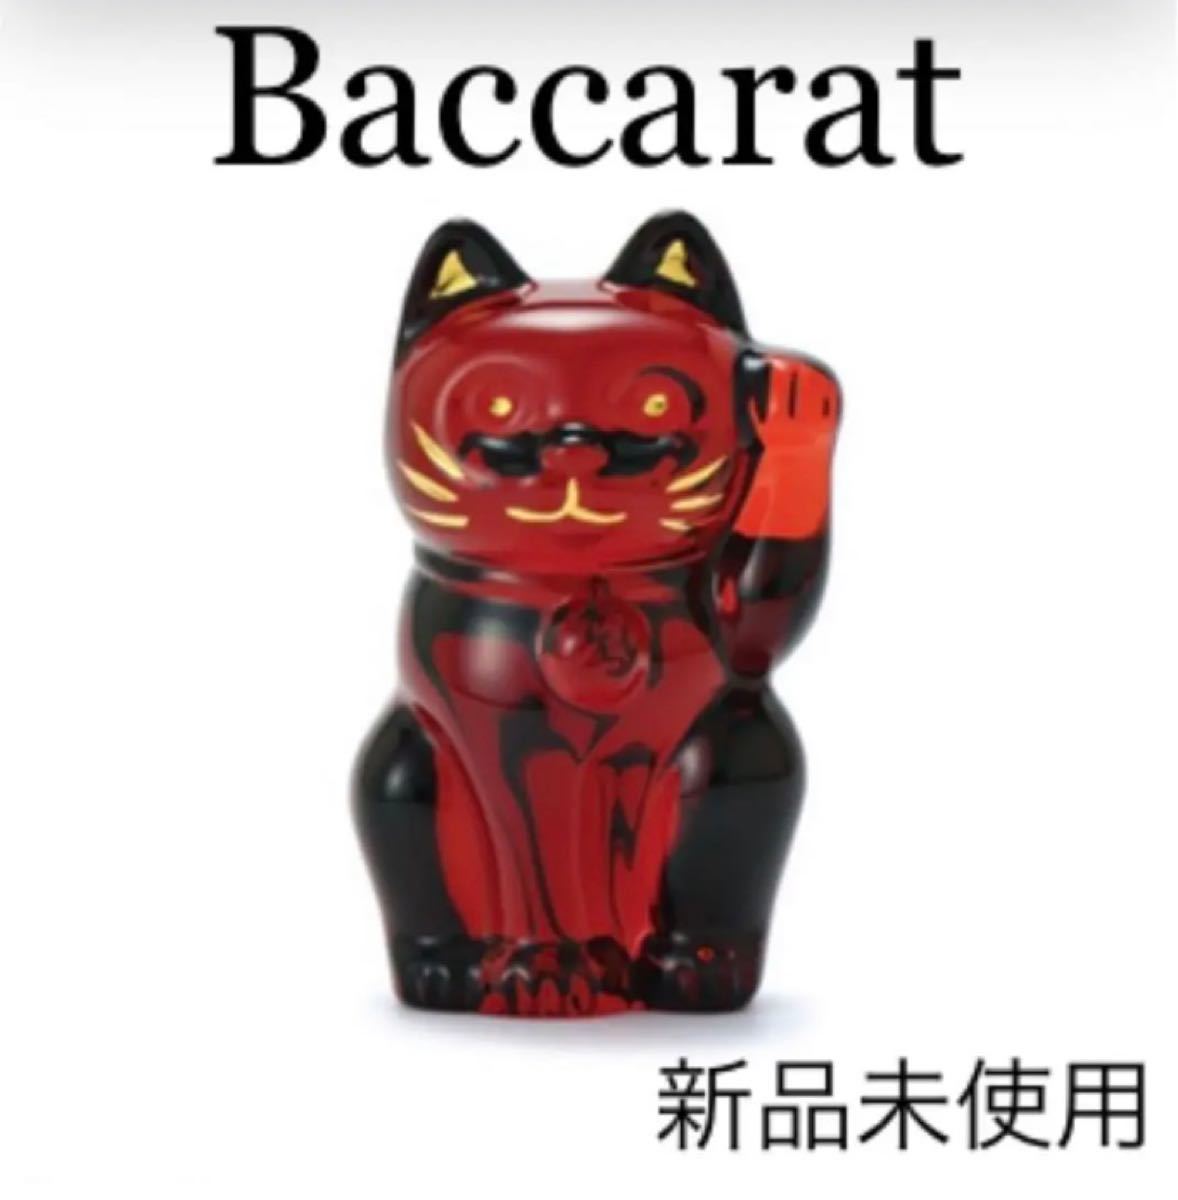 びのかたち Baccarat - バカラ 招き猫 クリア Sサイズ まねき猫